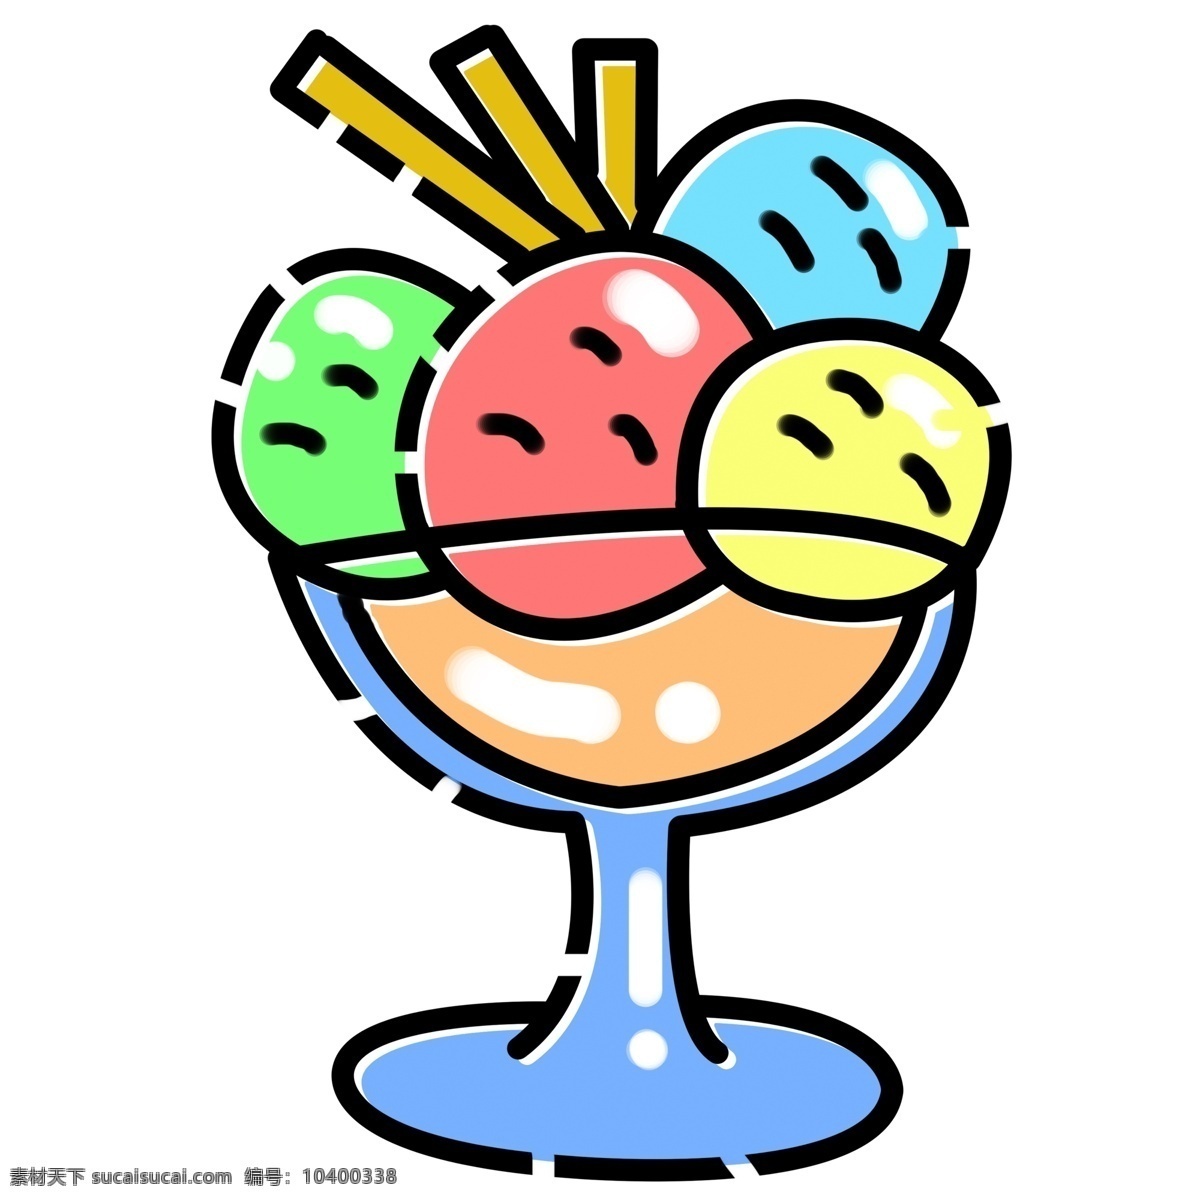 一杯 彩色 冰淇淋 球 免 抠 图 冰棒 夏季 冰镇 食物 解渴 凉爽一夏 夏天 哈根达斯 夏天的冰淇淋 不同 口味